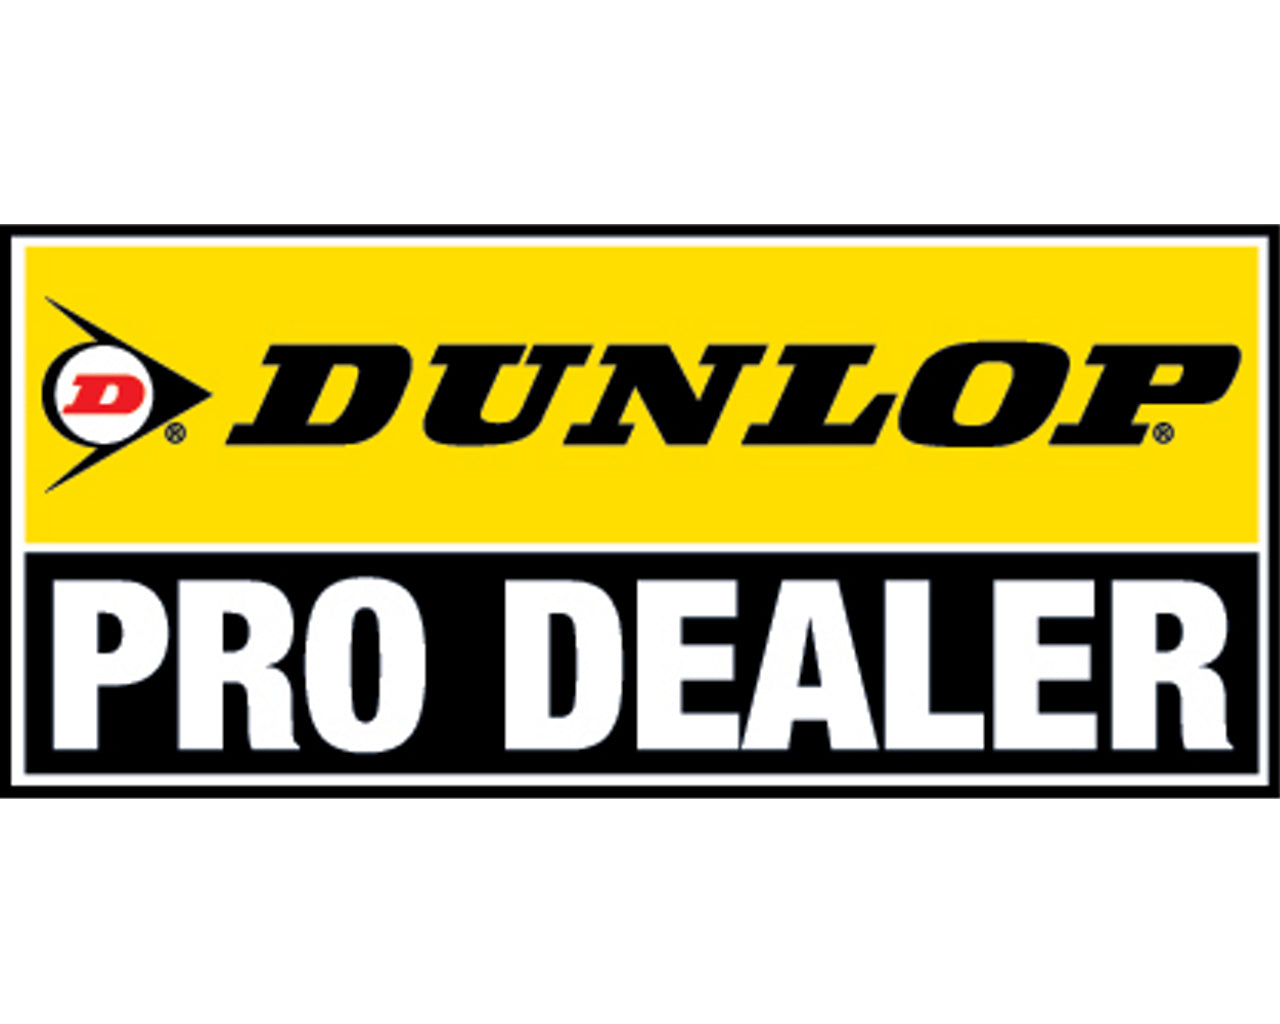 Dunlop 110/100-18 Geomax MX53 Off-Road MX Tire Rear 873-0655